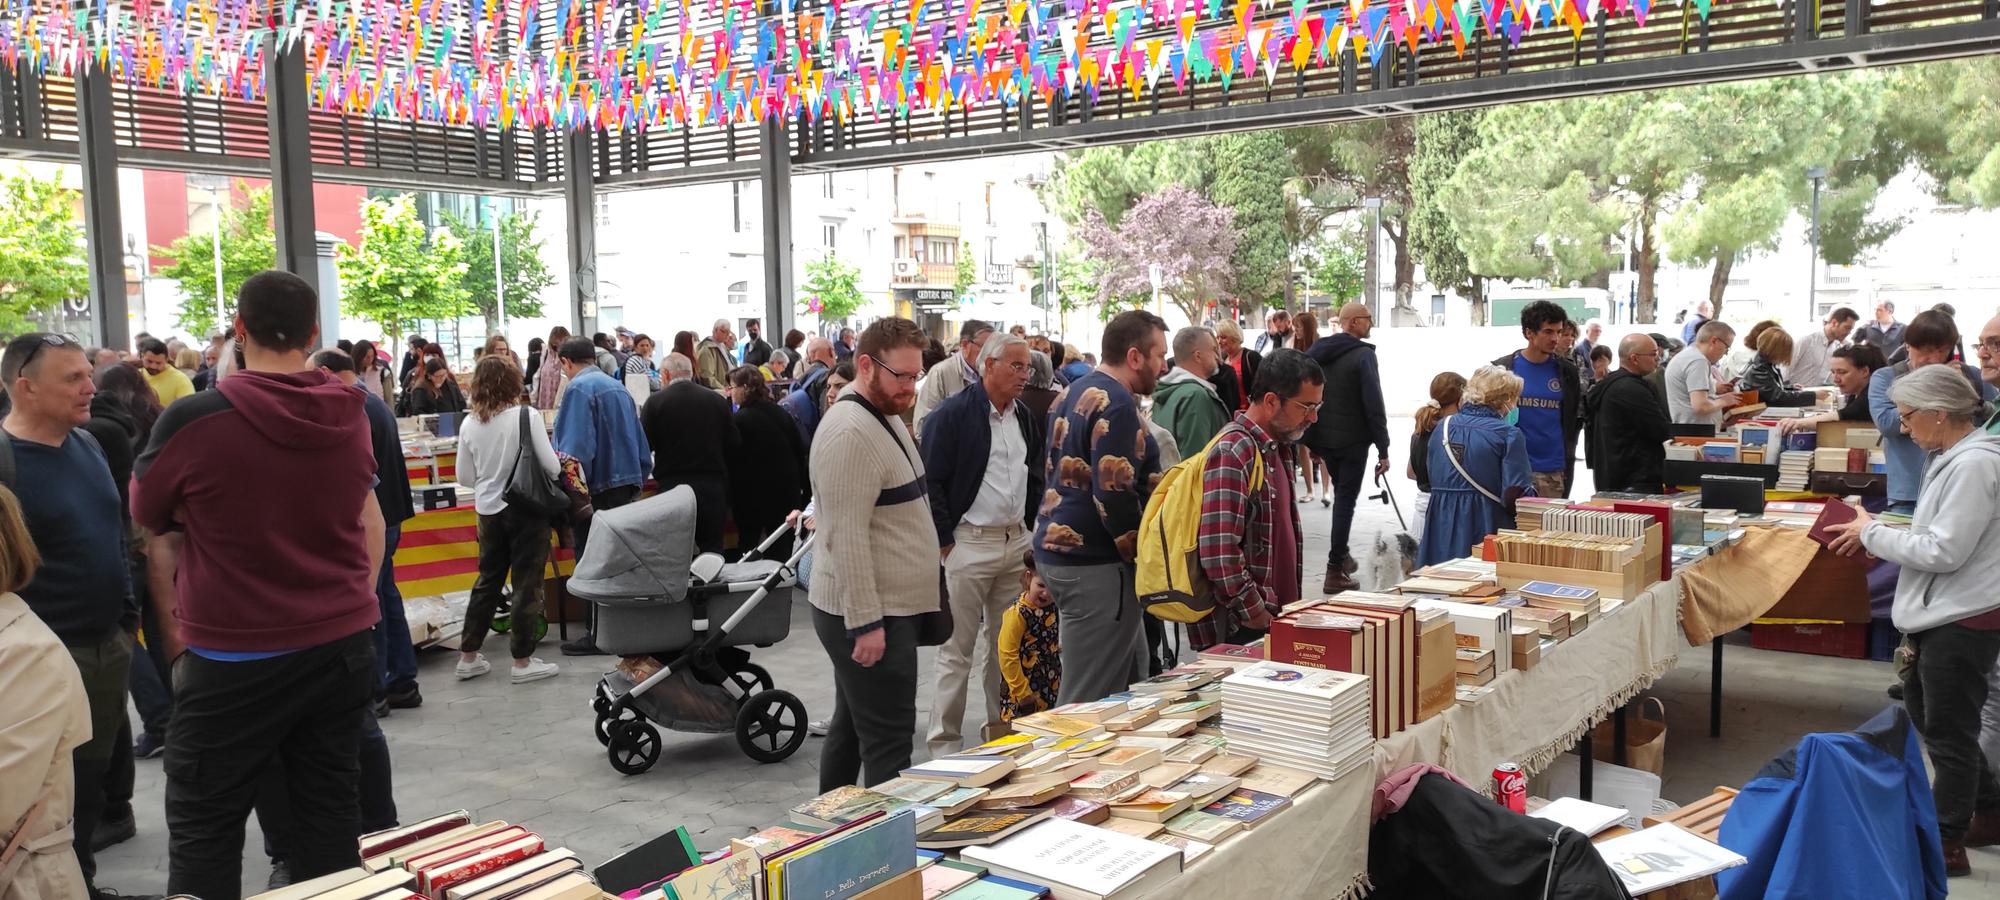 La Fira del Llibre Vell, un dels grans atractius del 3 de maig a la Santa Creu de Figueres